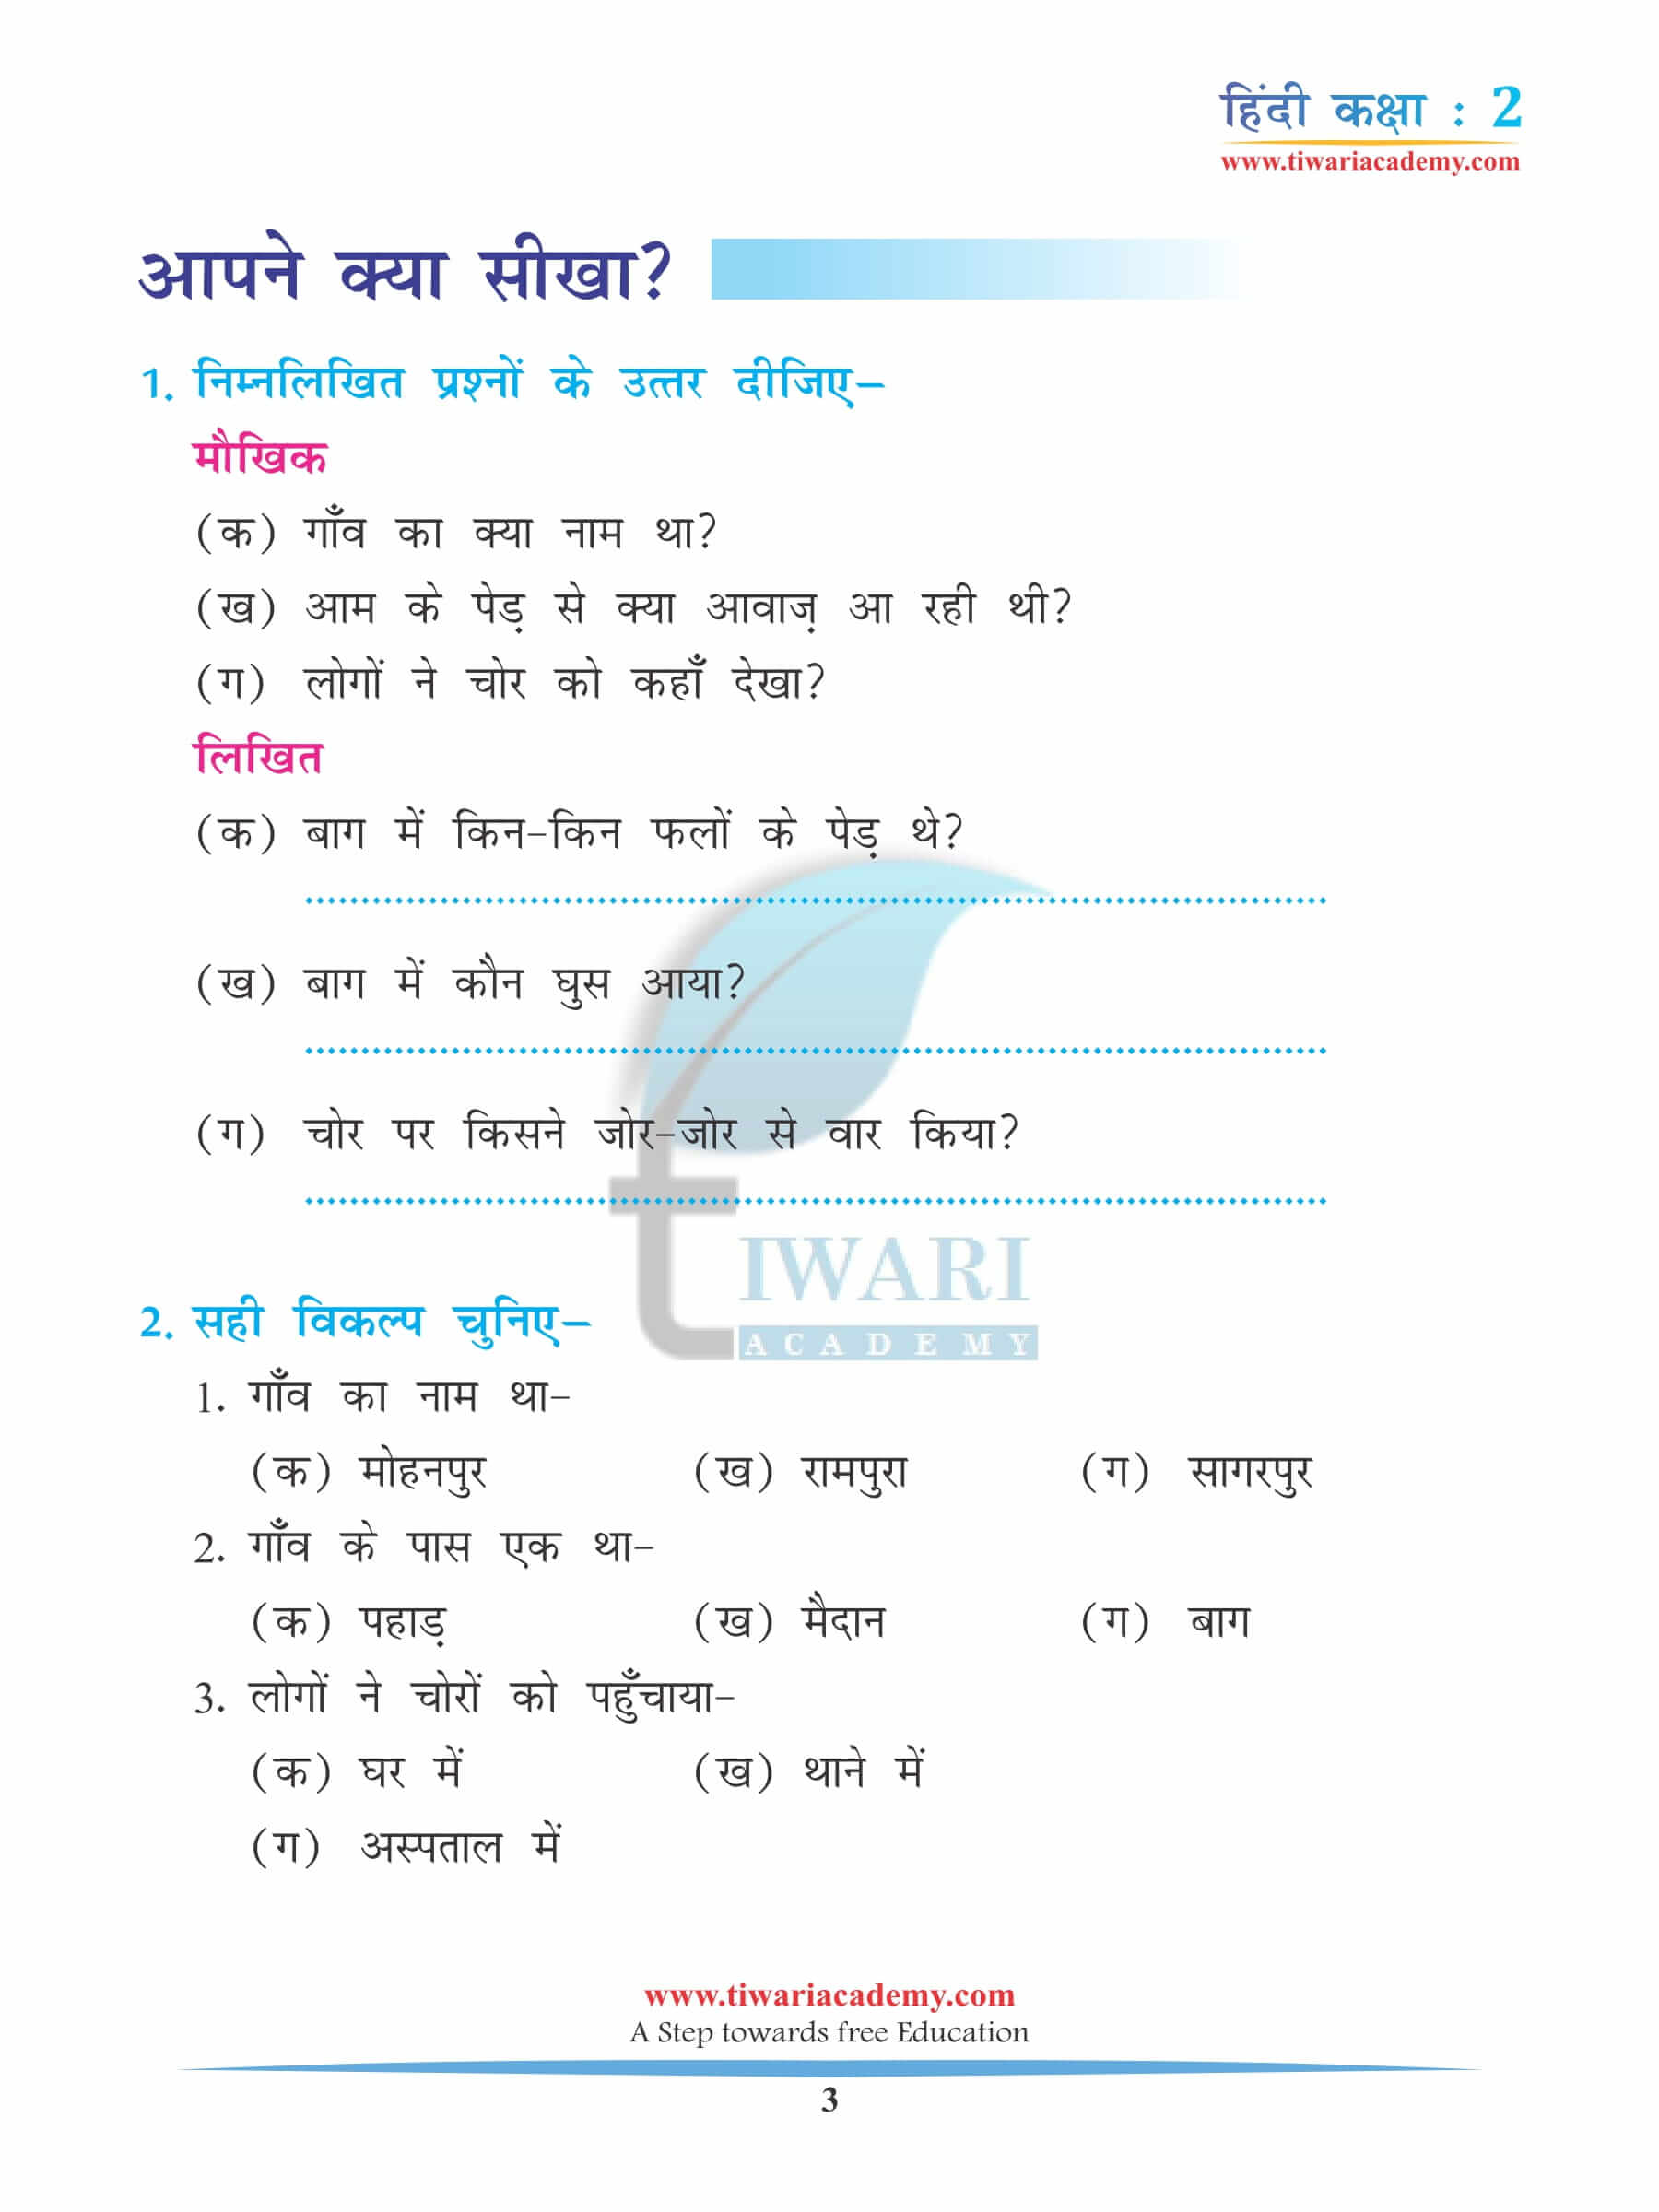 कक्षा 2 हिंदी अध्याय 6 अभ्यास के लिए प्रश्न